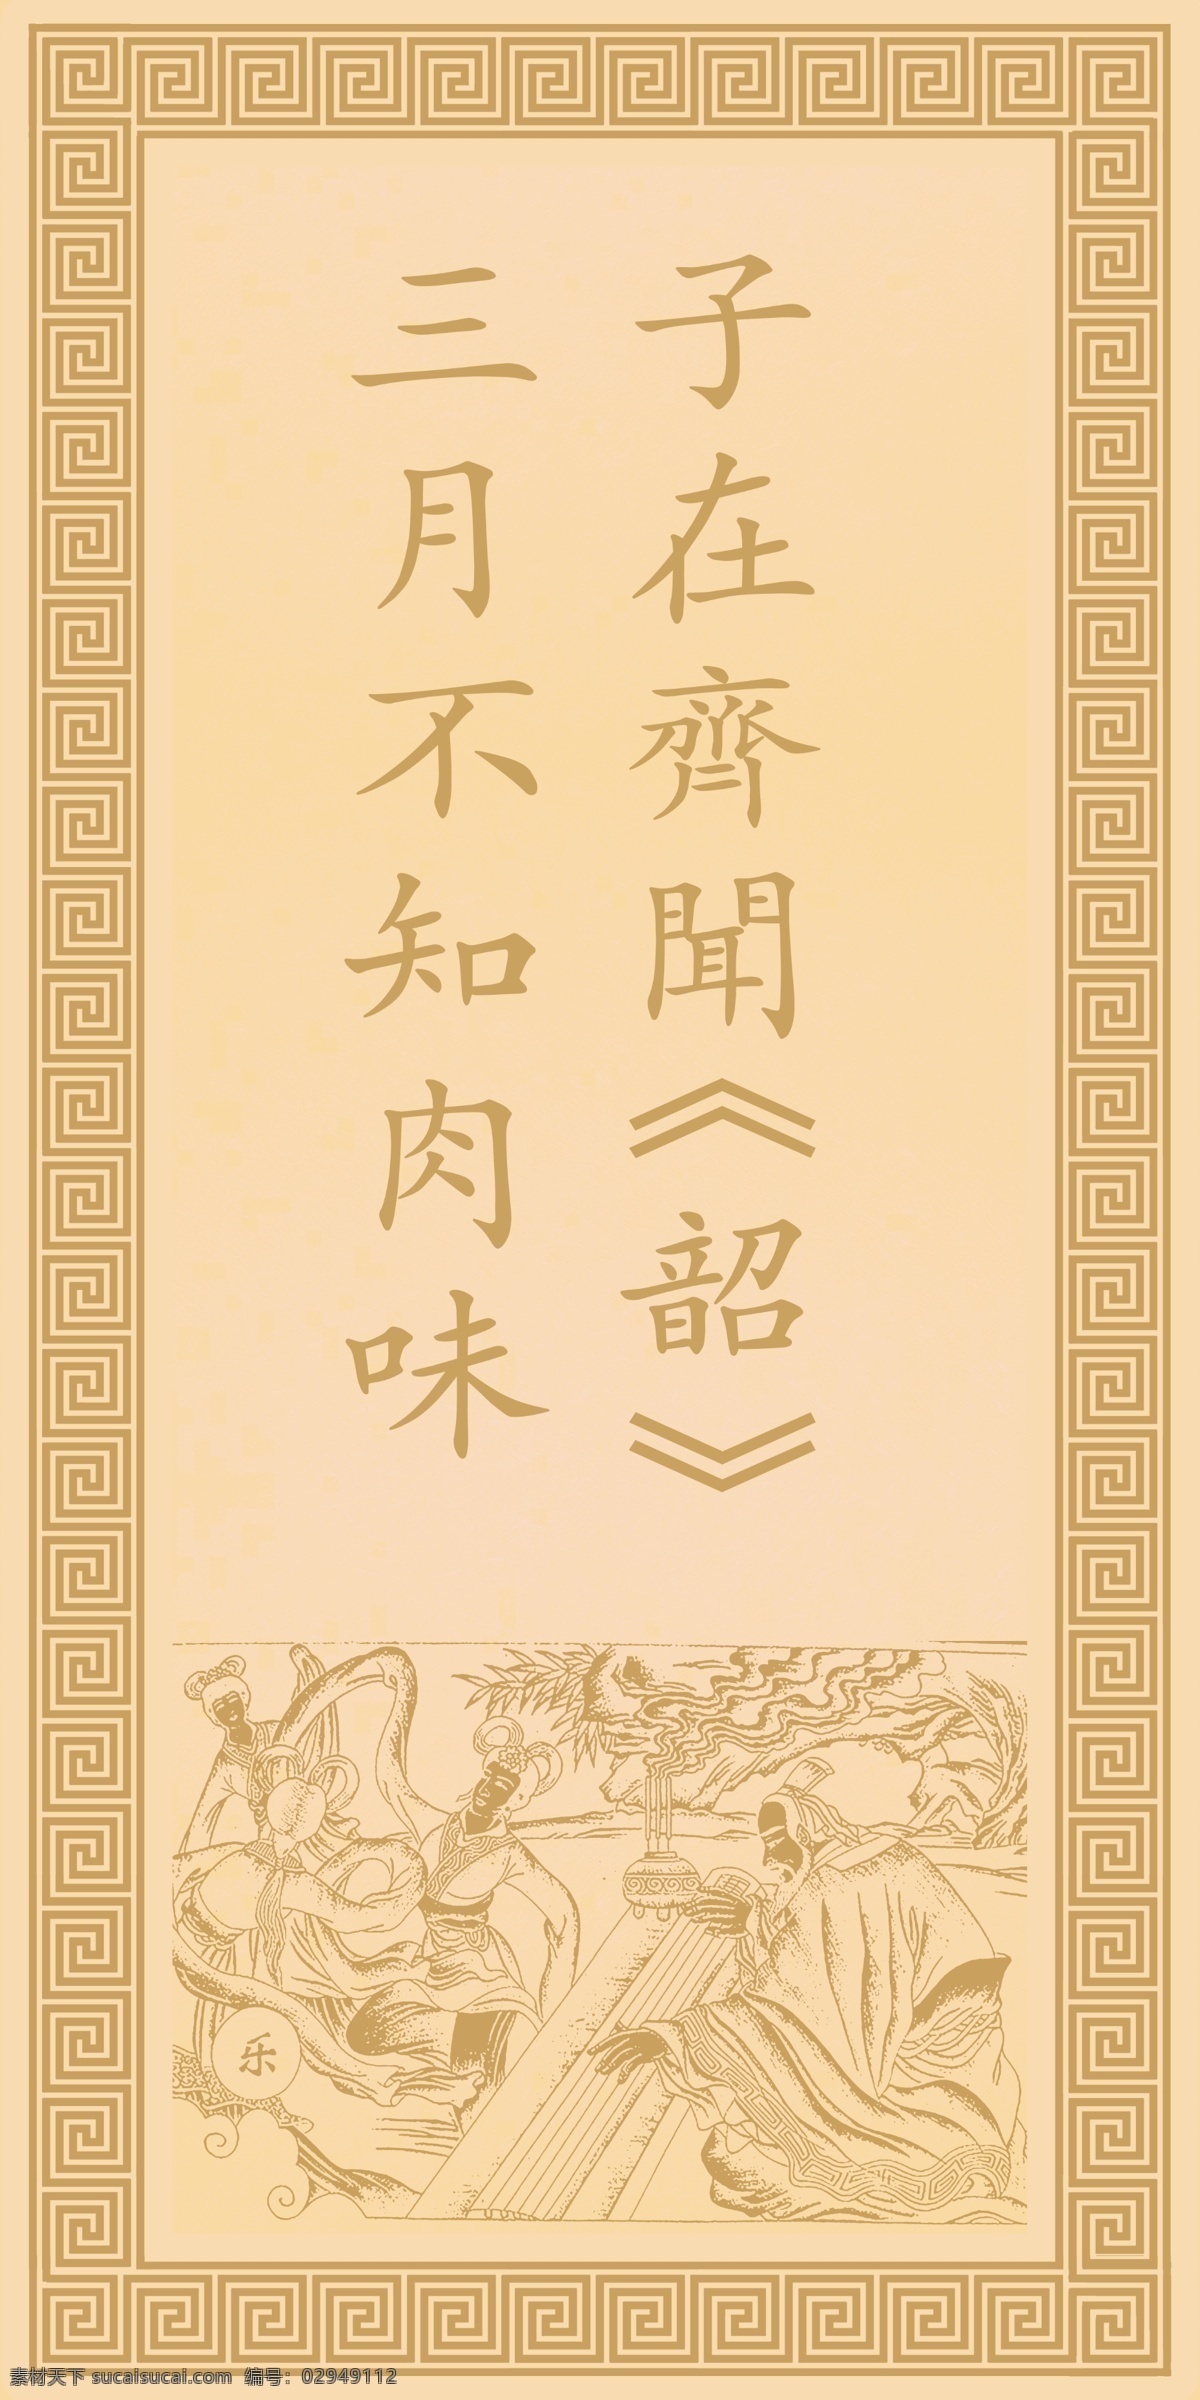 六艺乐 孔子 论语 儒家文化 花边 儒家文化壁画 六艺 文化教育 文化艺术 传统文化